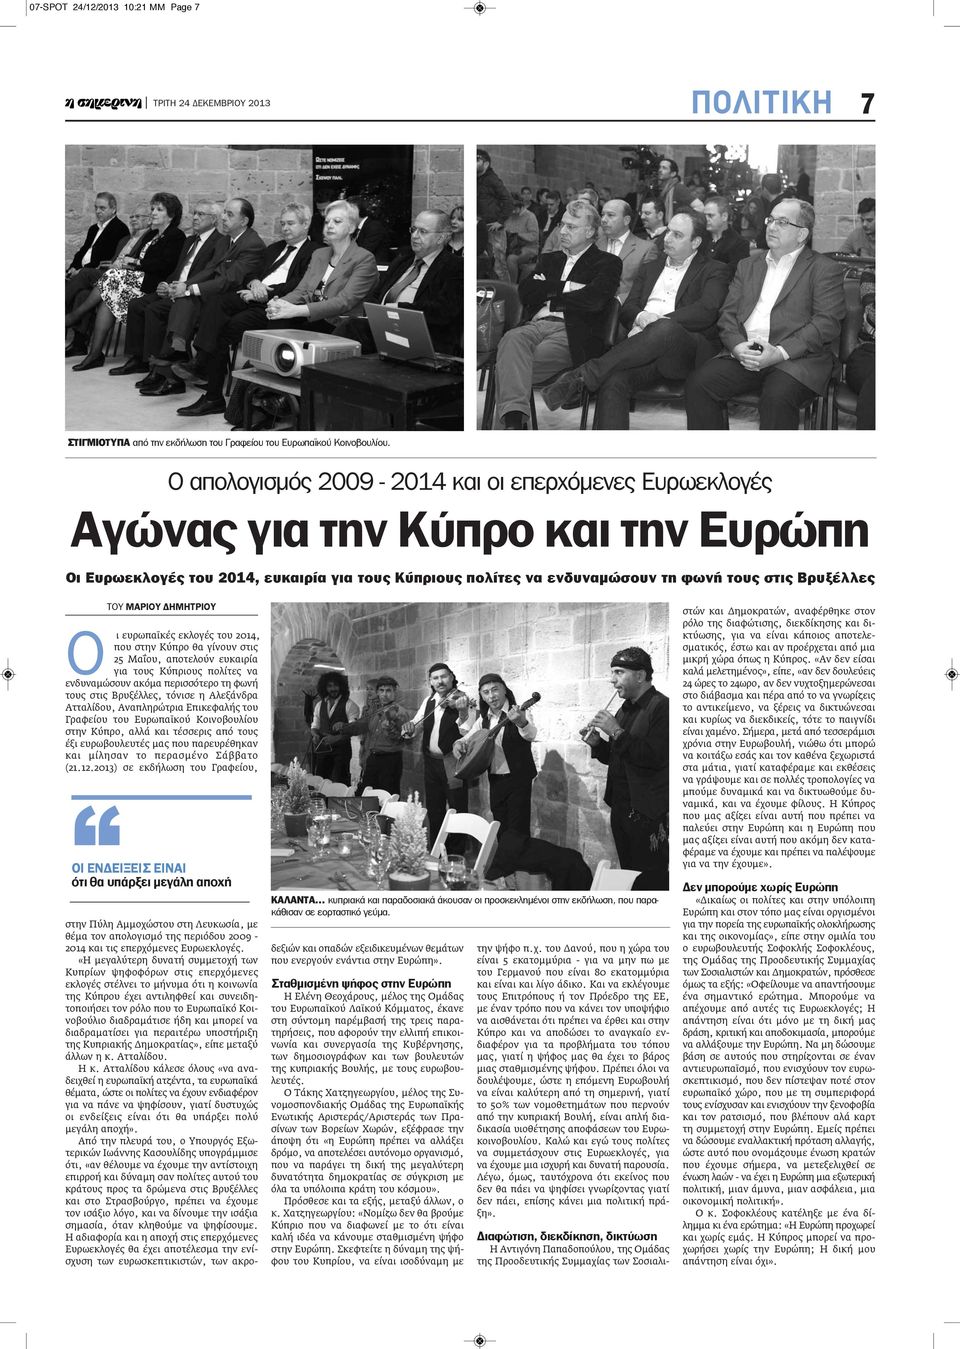 ΜΑΡΙΟΥ ΔΗΜΗΤΡΙΟΥ Ο ι ευρωπαϊκές εκλογές του 2014, που στην Κύπρο θα γίνουν στις 25 Μαΐου, αποτελούν ευκαιρία για τους Κύπριους πολίτες να ενδυναμώσουν ακόμα περισσότερο τη φωνή τους στις Βρυξέλλες,